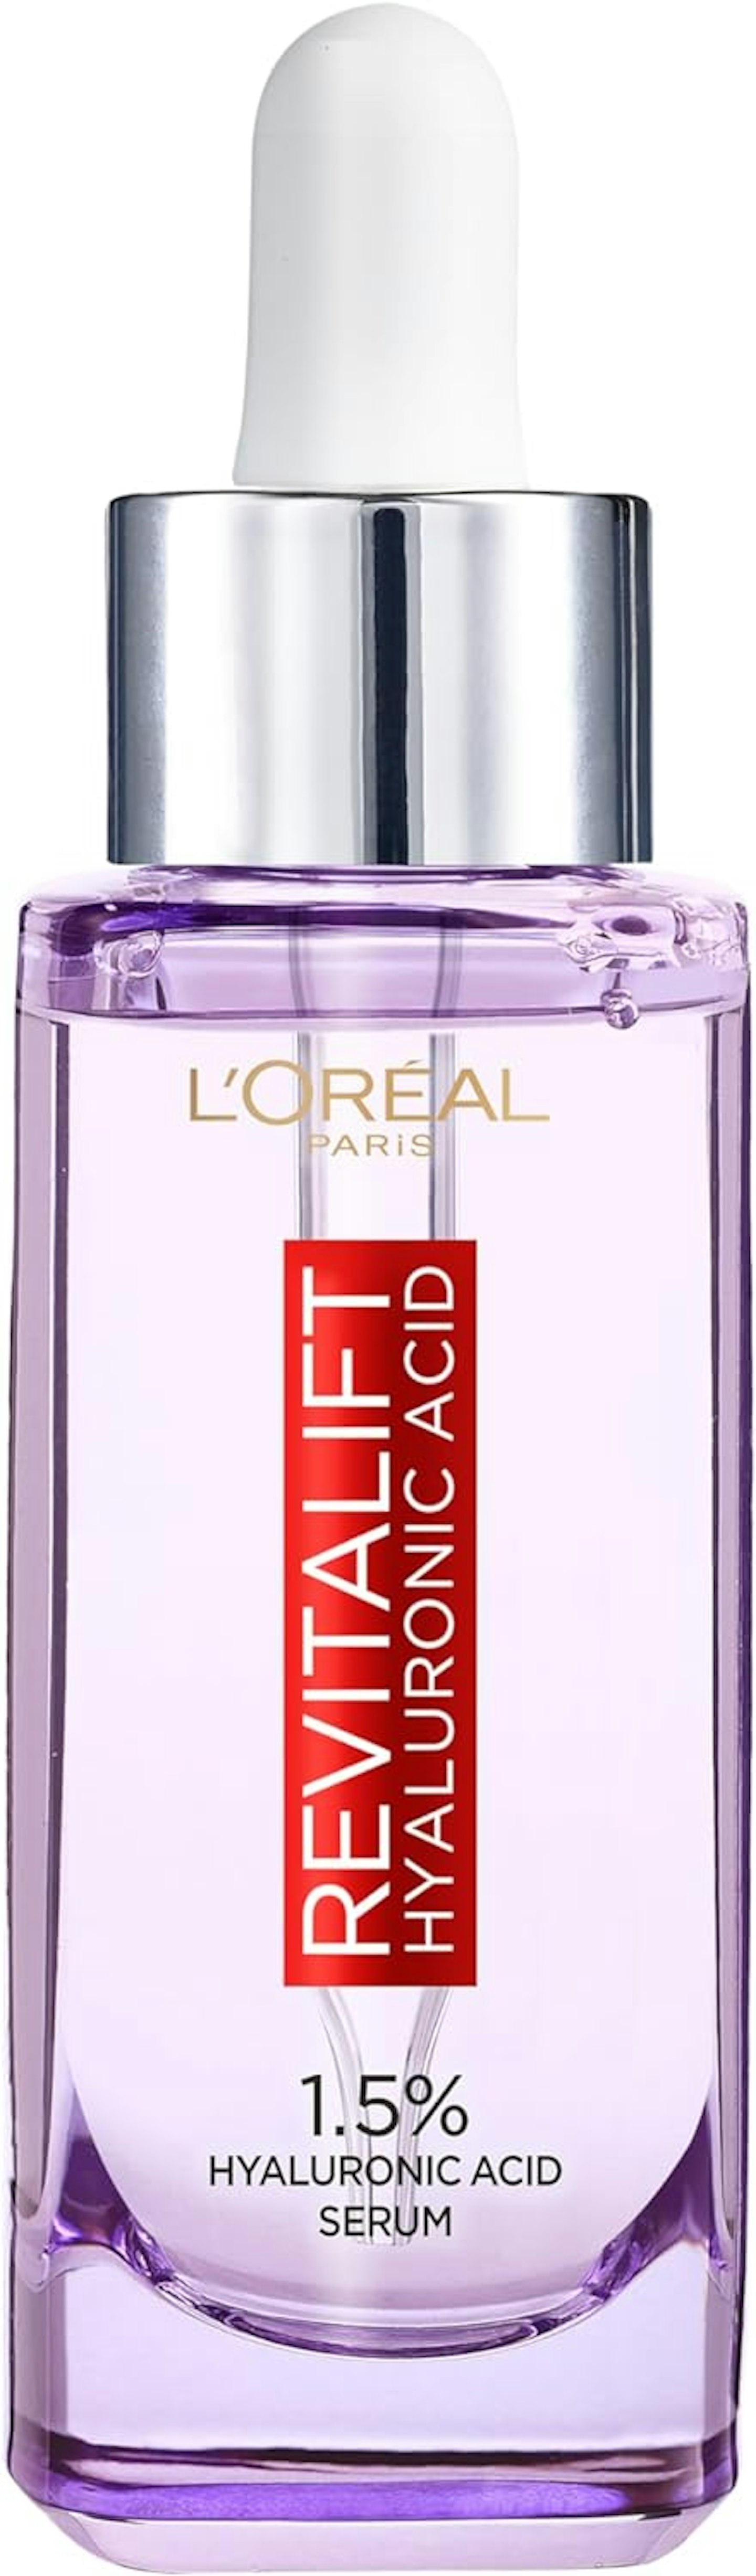 L'Oreal Paris Revitalift Filler [+Hyaluronic Acid] Serum